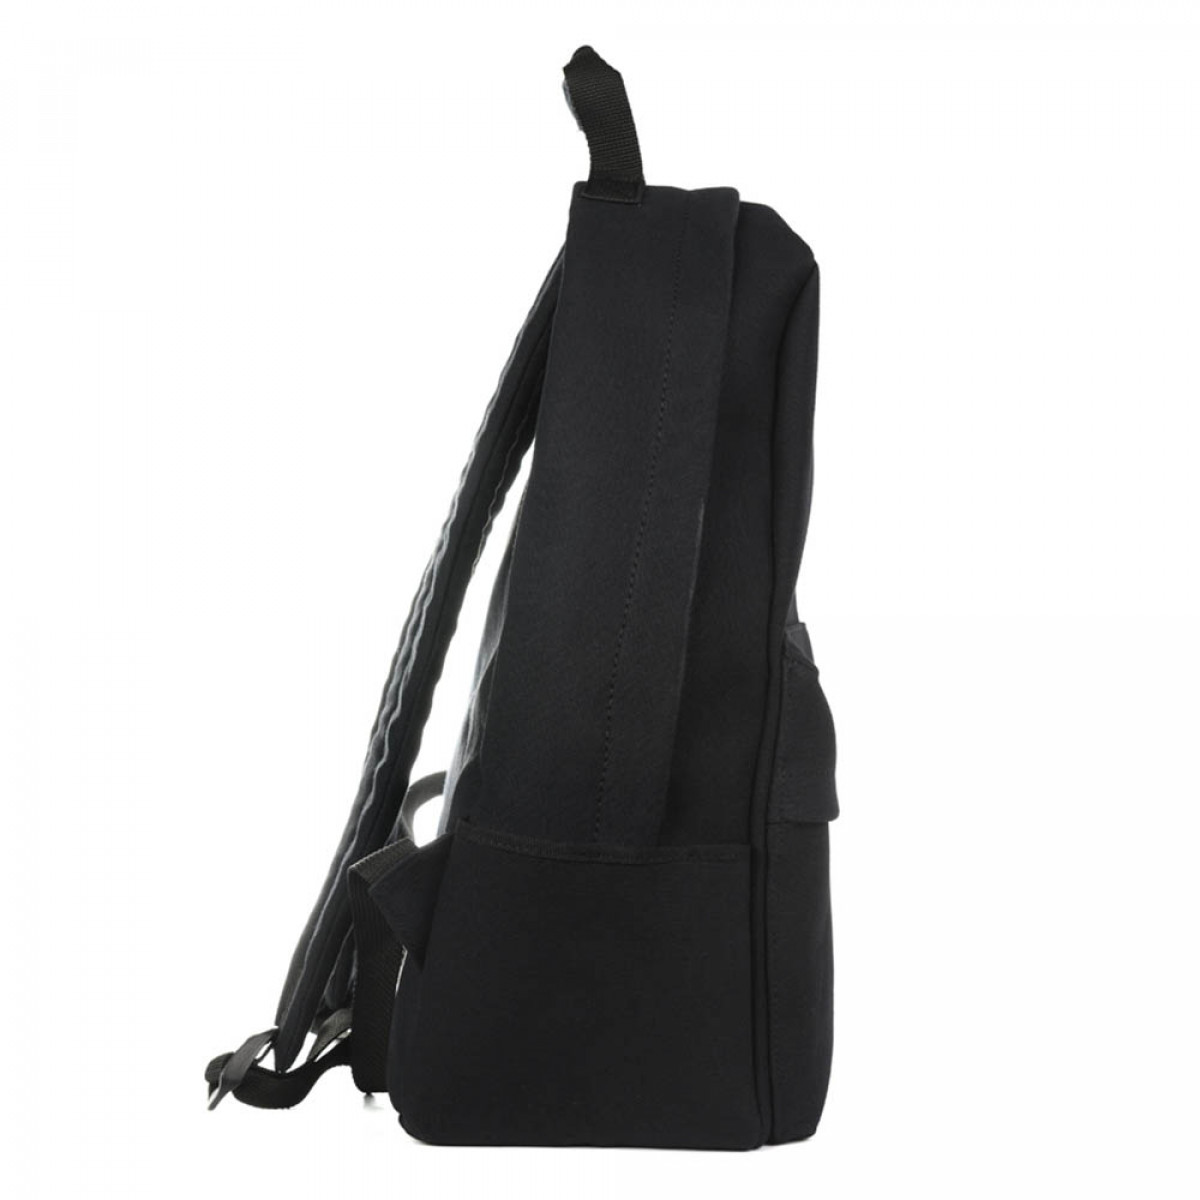 Backpack TRAVEL, Black